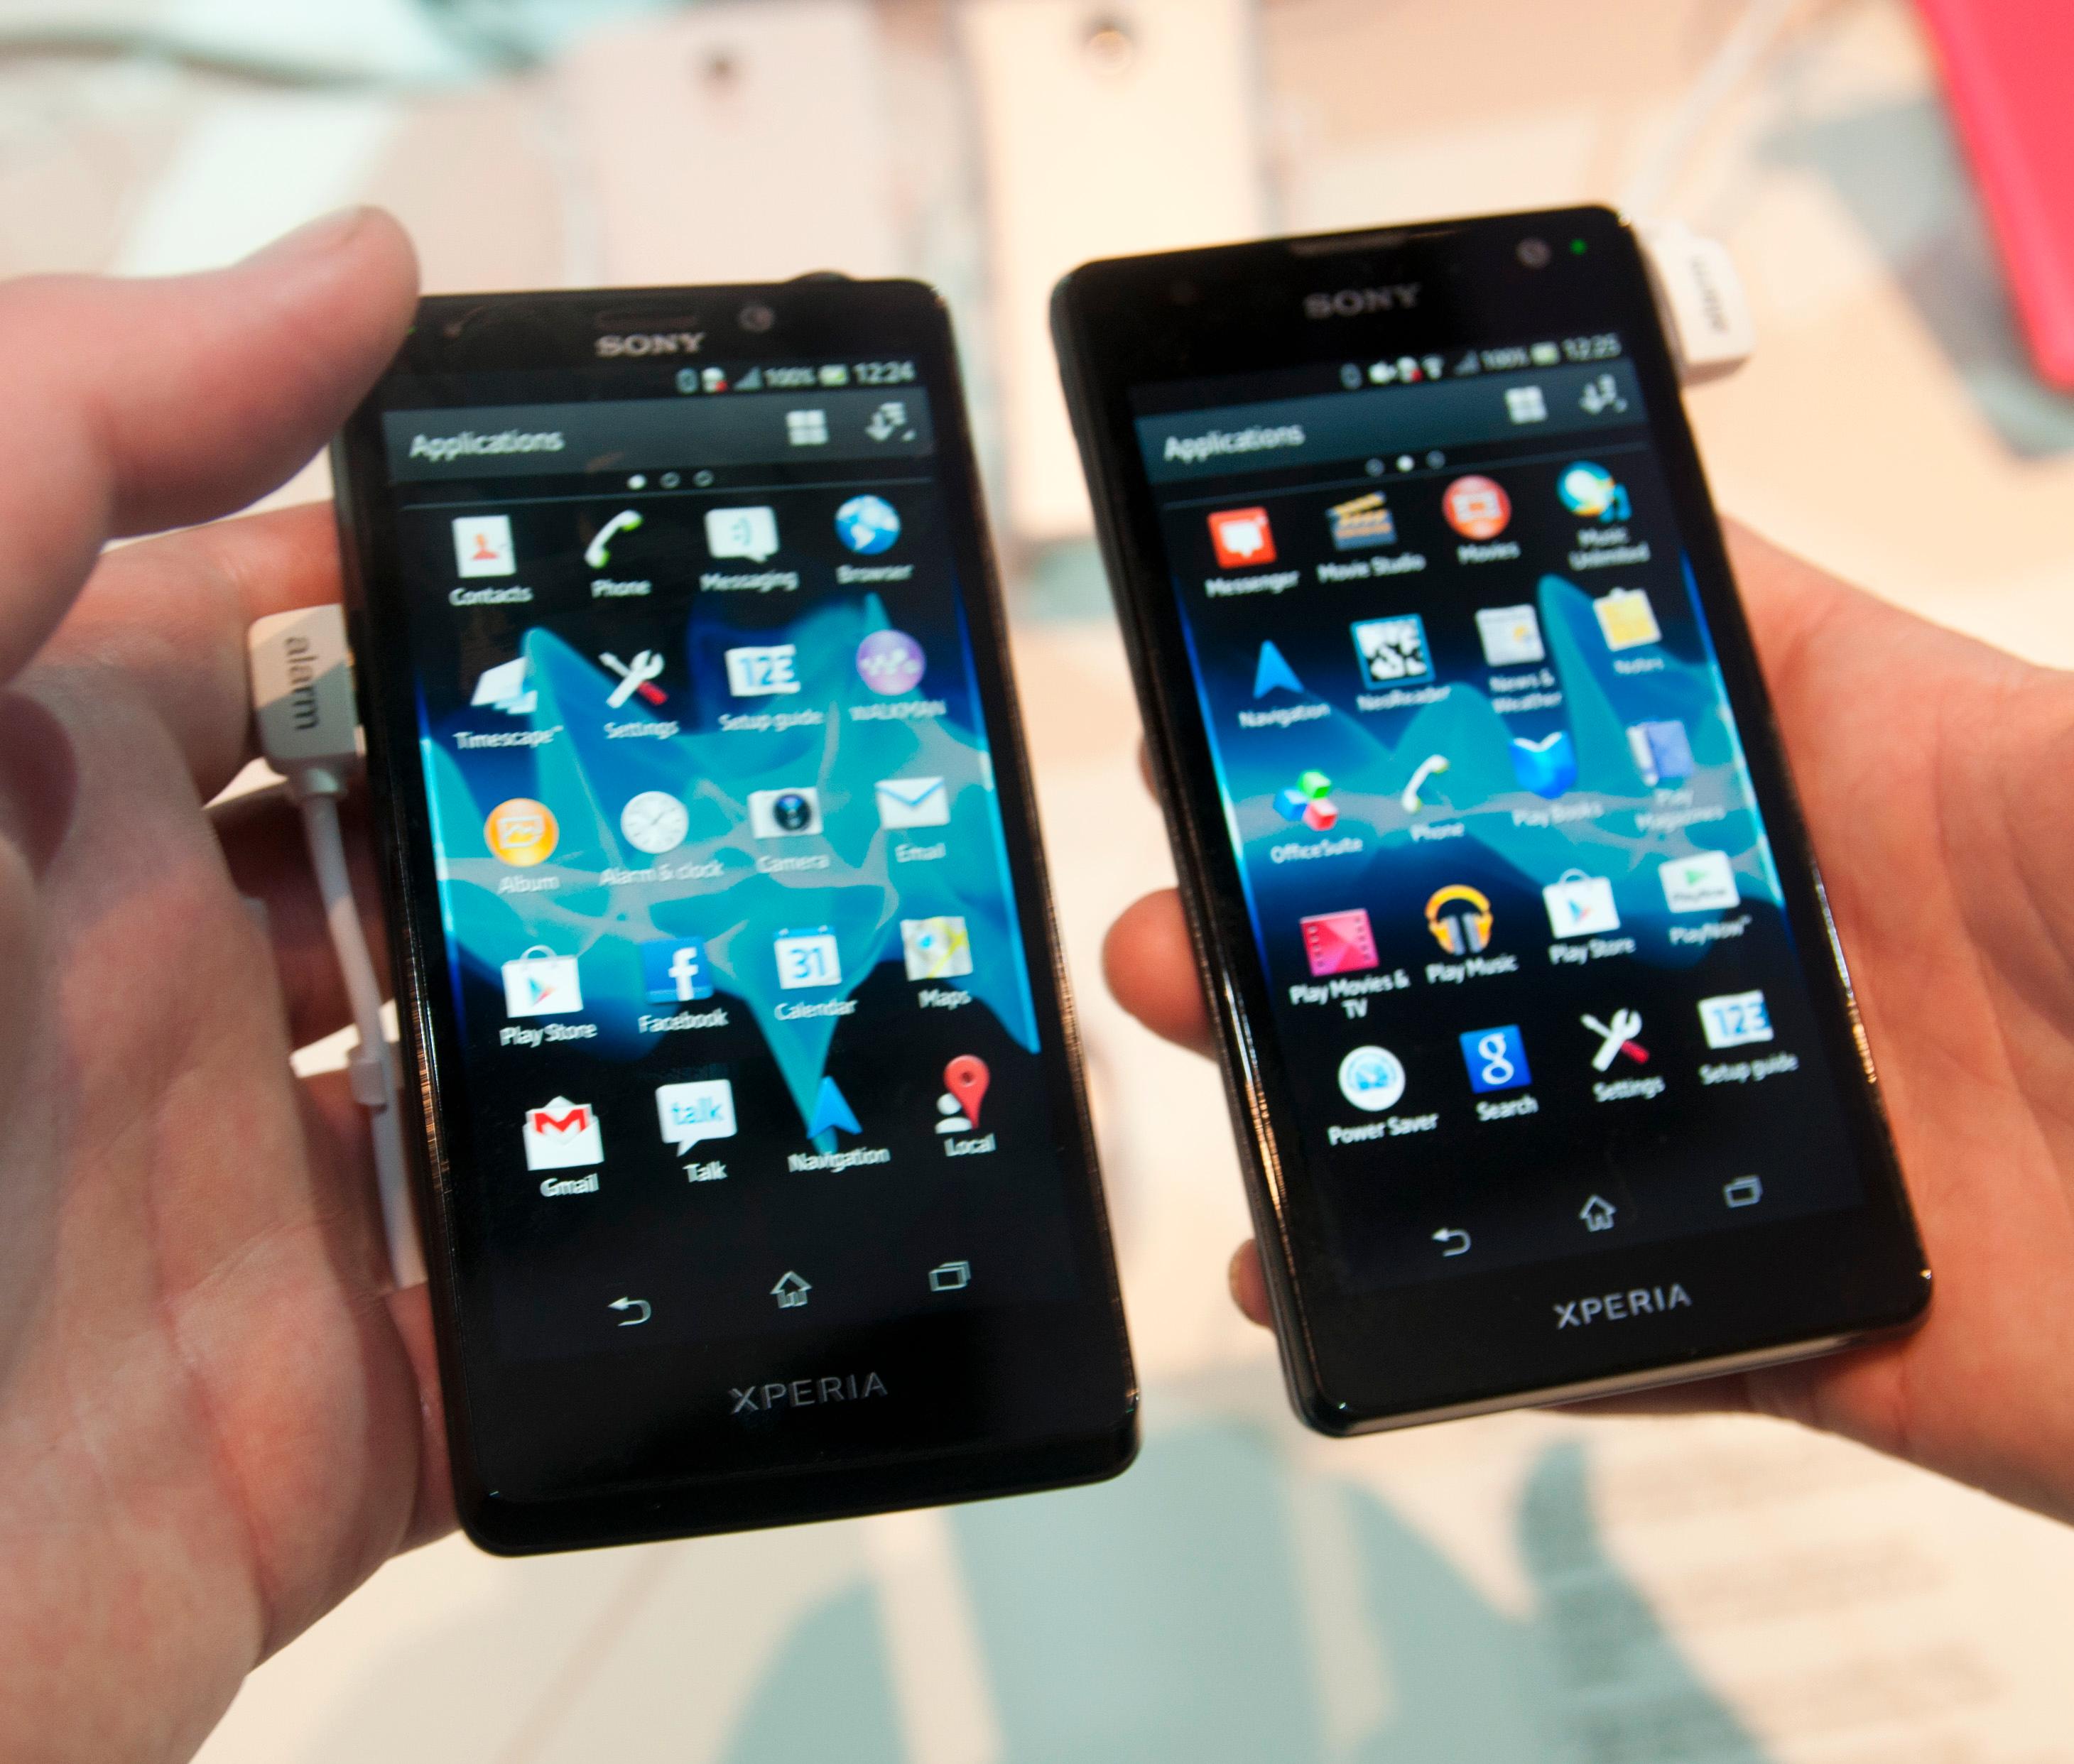 Sony lanserte to ulike versjoner av Xperia T. Den andre heter TX, og det er nesten bare designen som skiller de to telefonene.